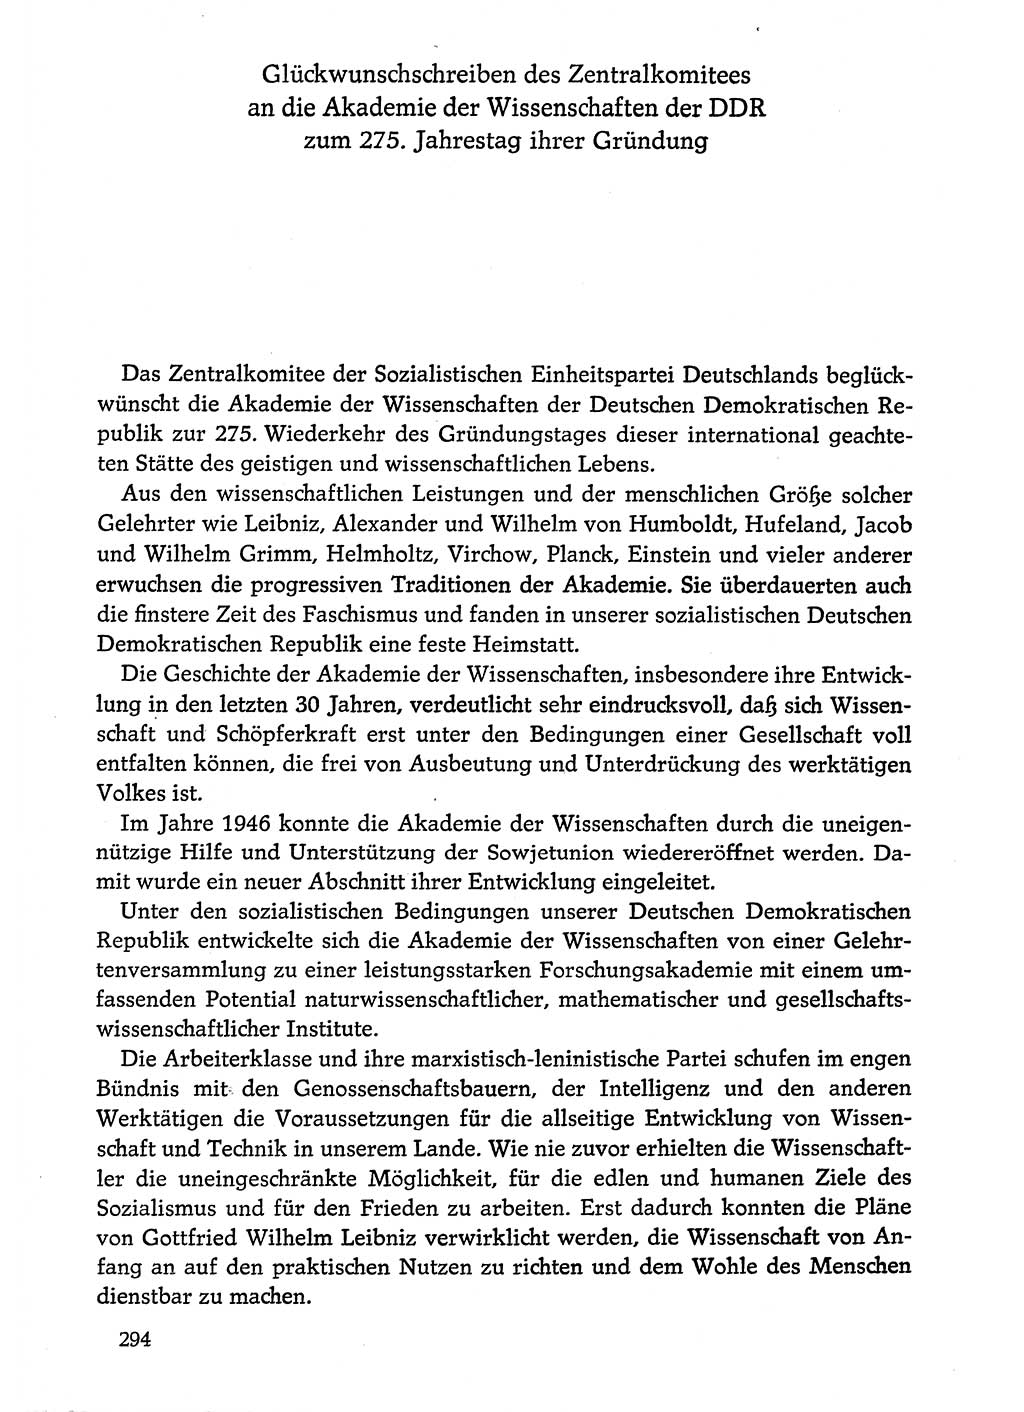 Dokumente der Sozialistischen Einheitspartei Deutschlands (SED) [Deutsche Demokratische Republik (DDR)] 1974-1975, Seite 294 (Dok. SED DDR 1978, Bd. ⅩⅤ, S. 294)